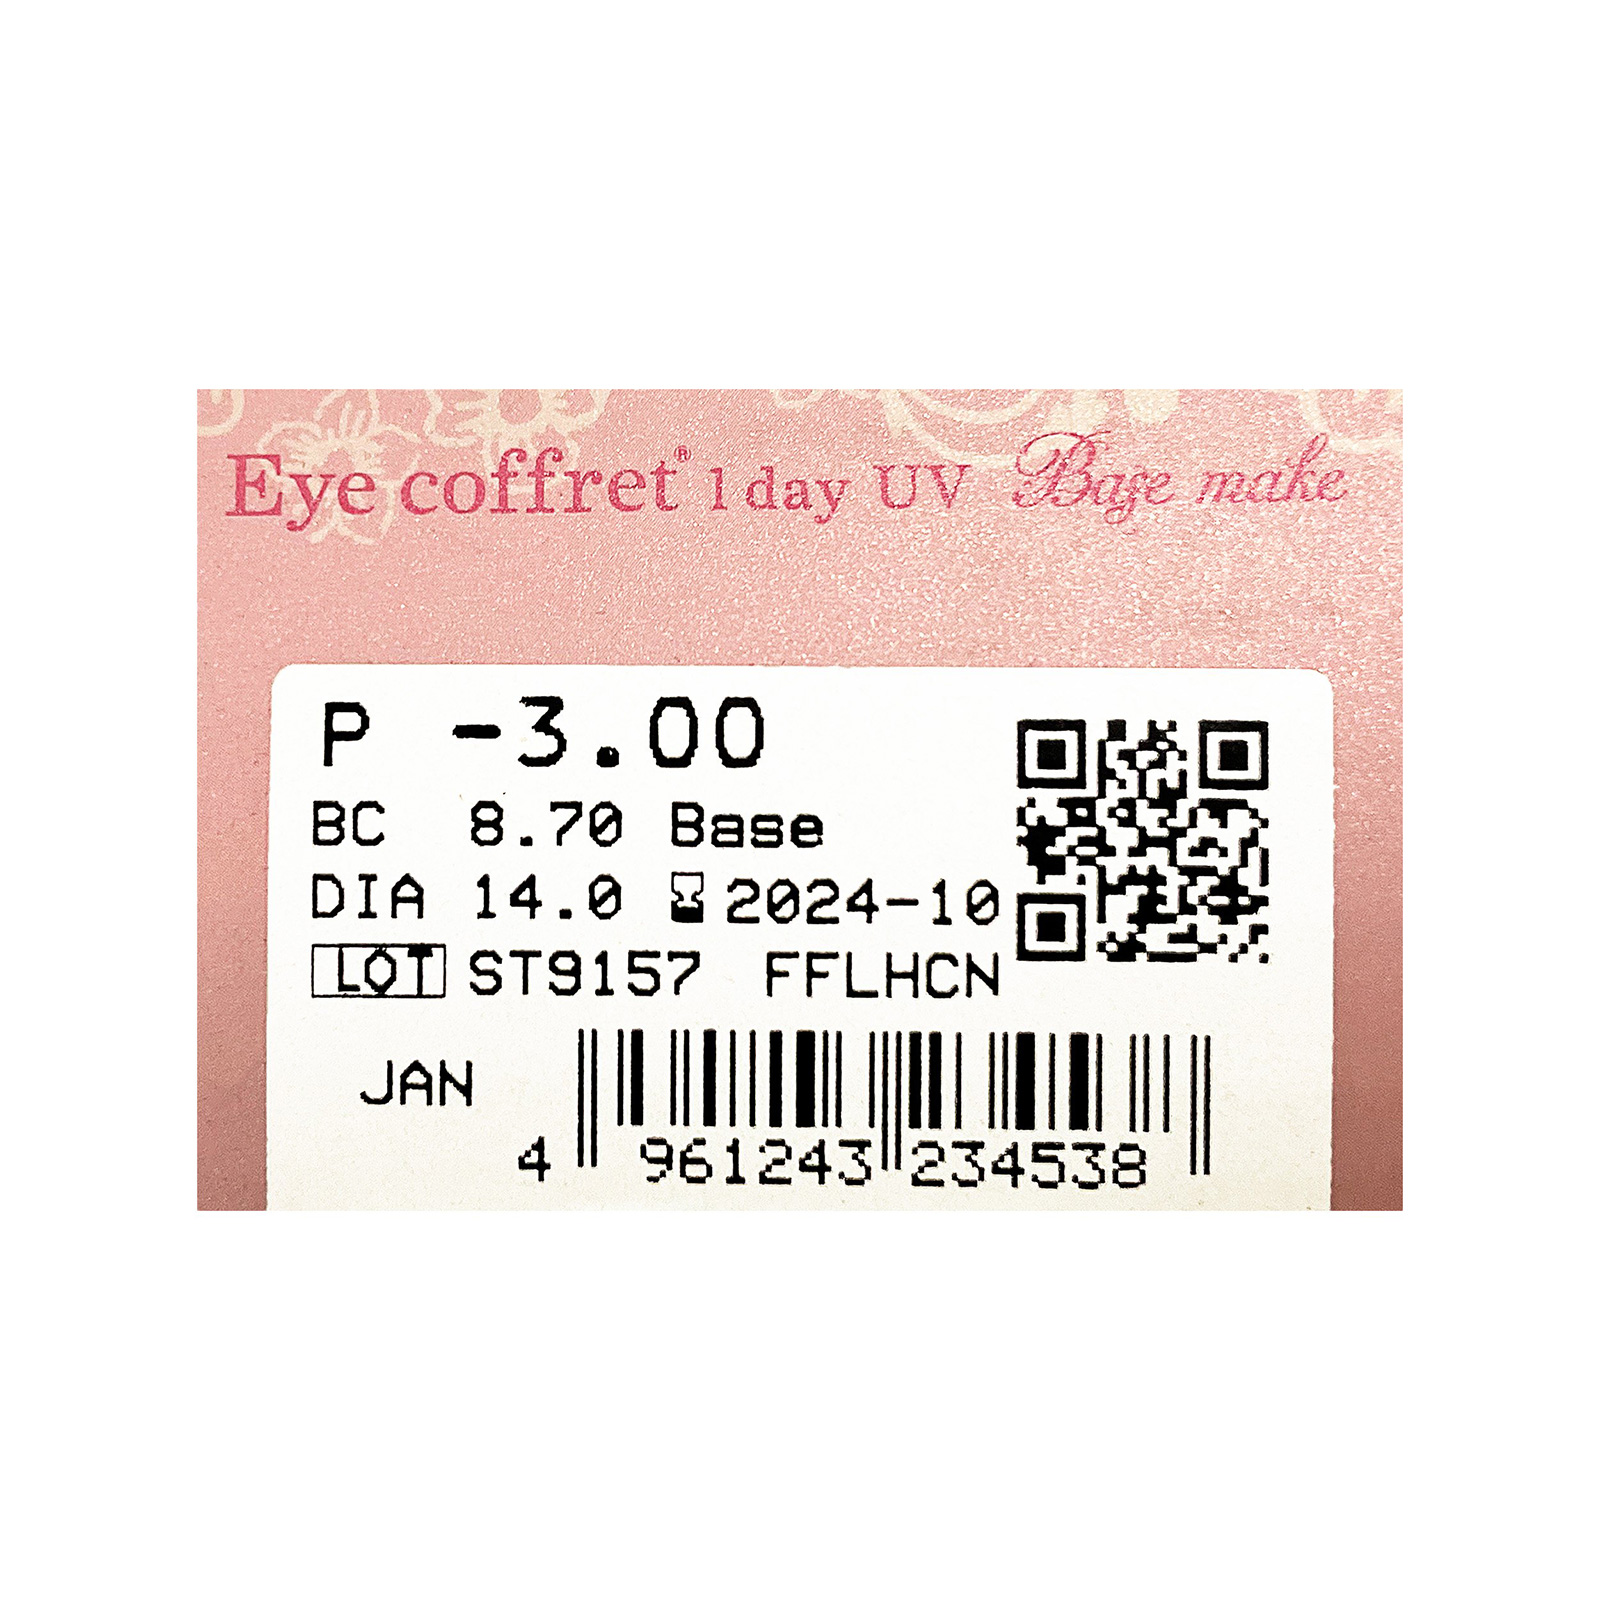 Eye coffret 1day UV (Base make) 10 Lenses